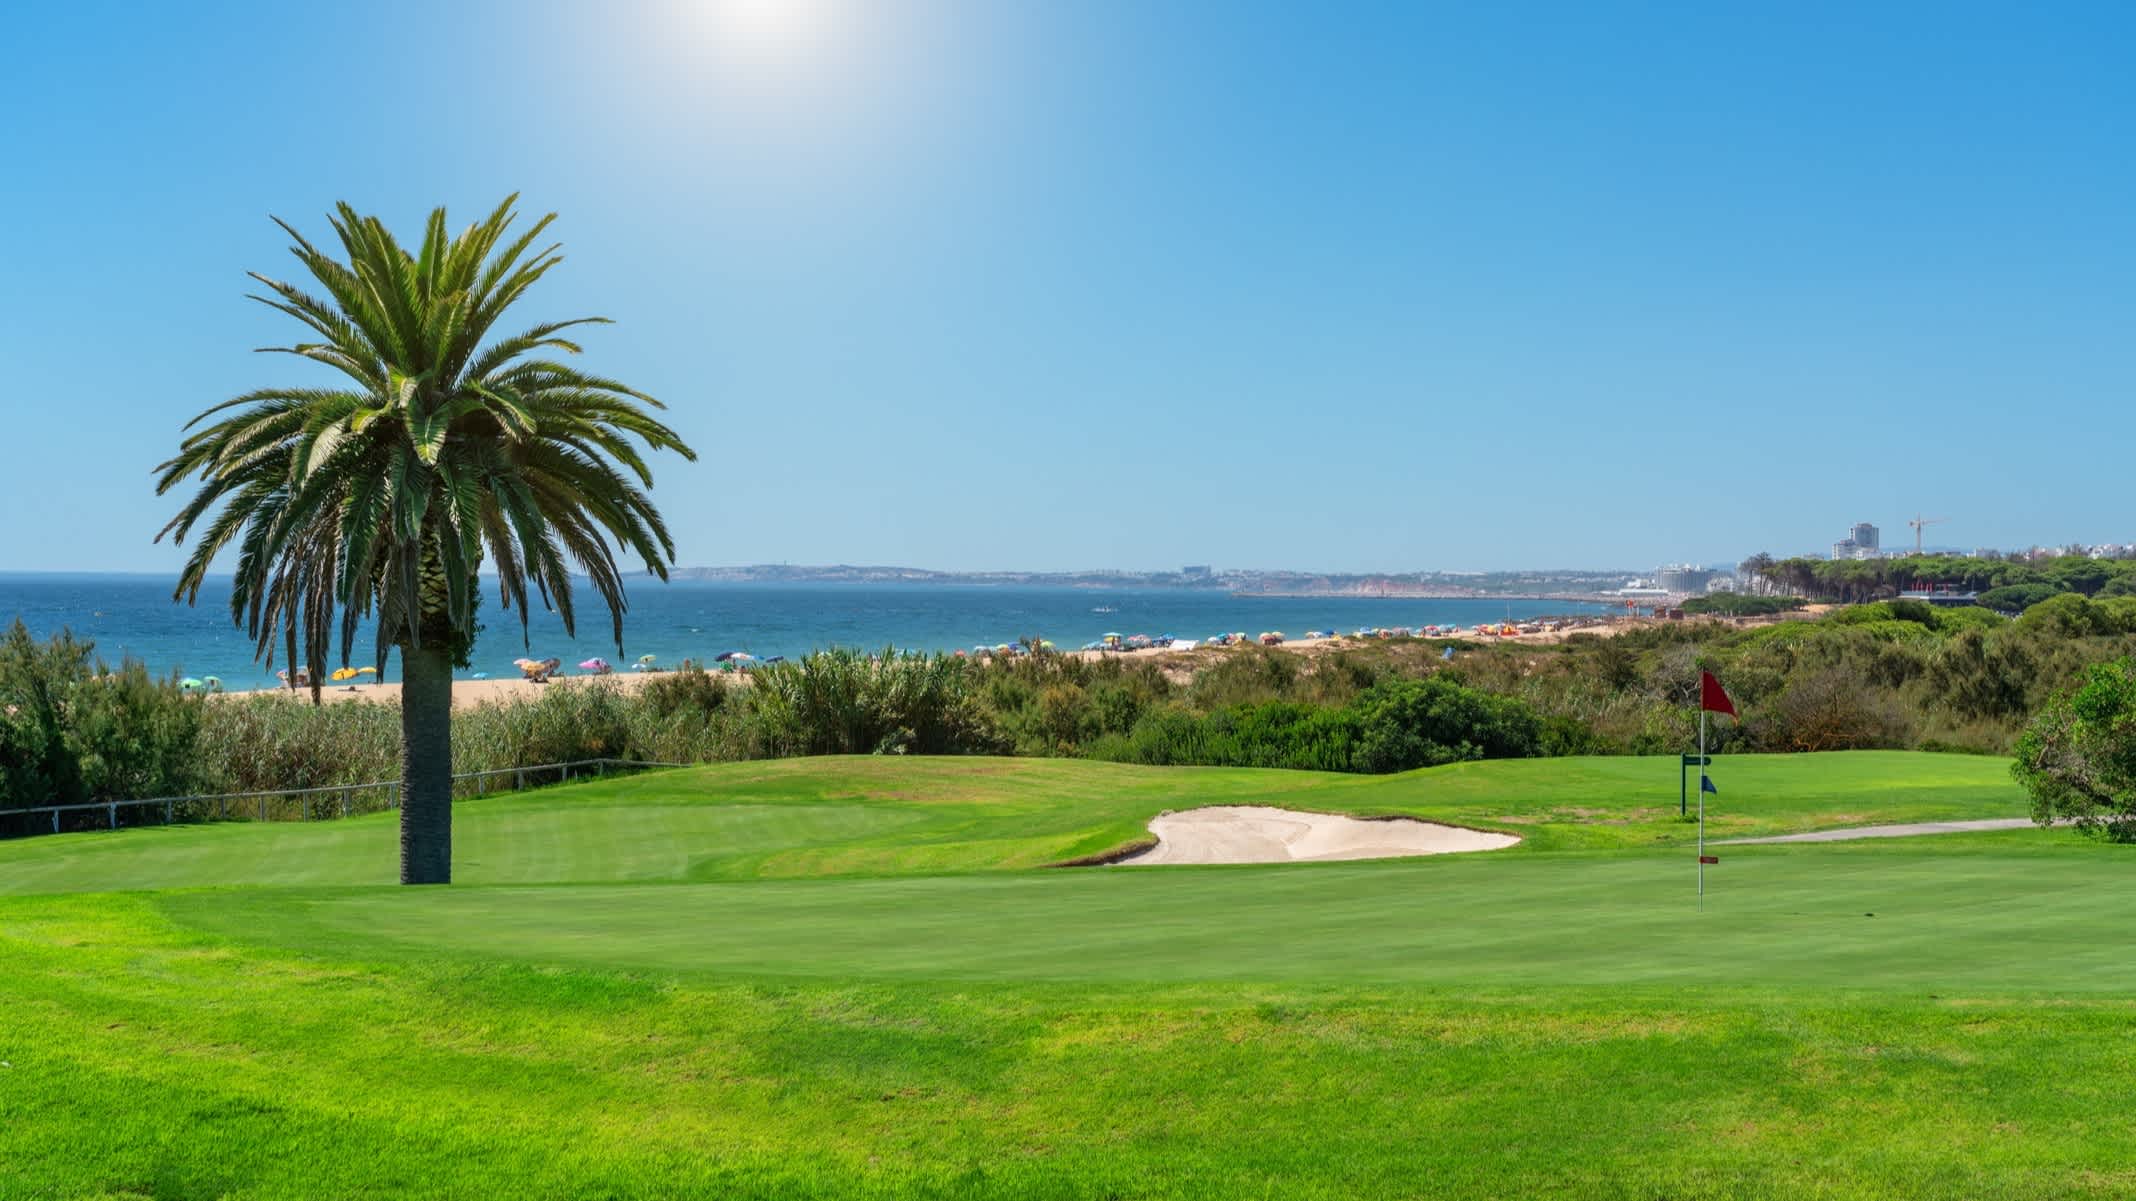 Resort Golfplätze mit Palmen in Algarve, Portugal.